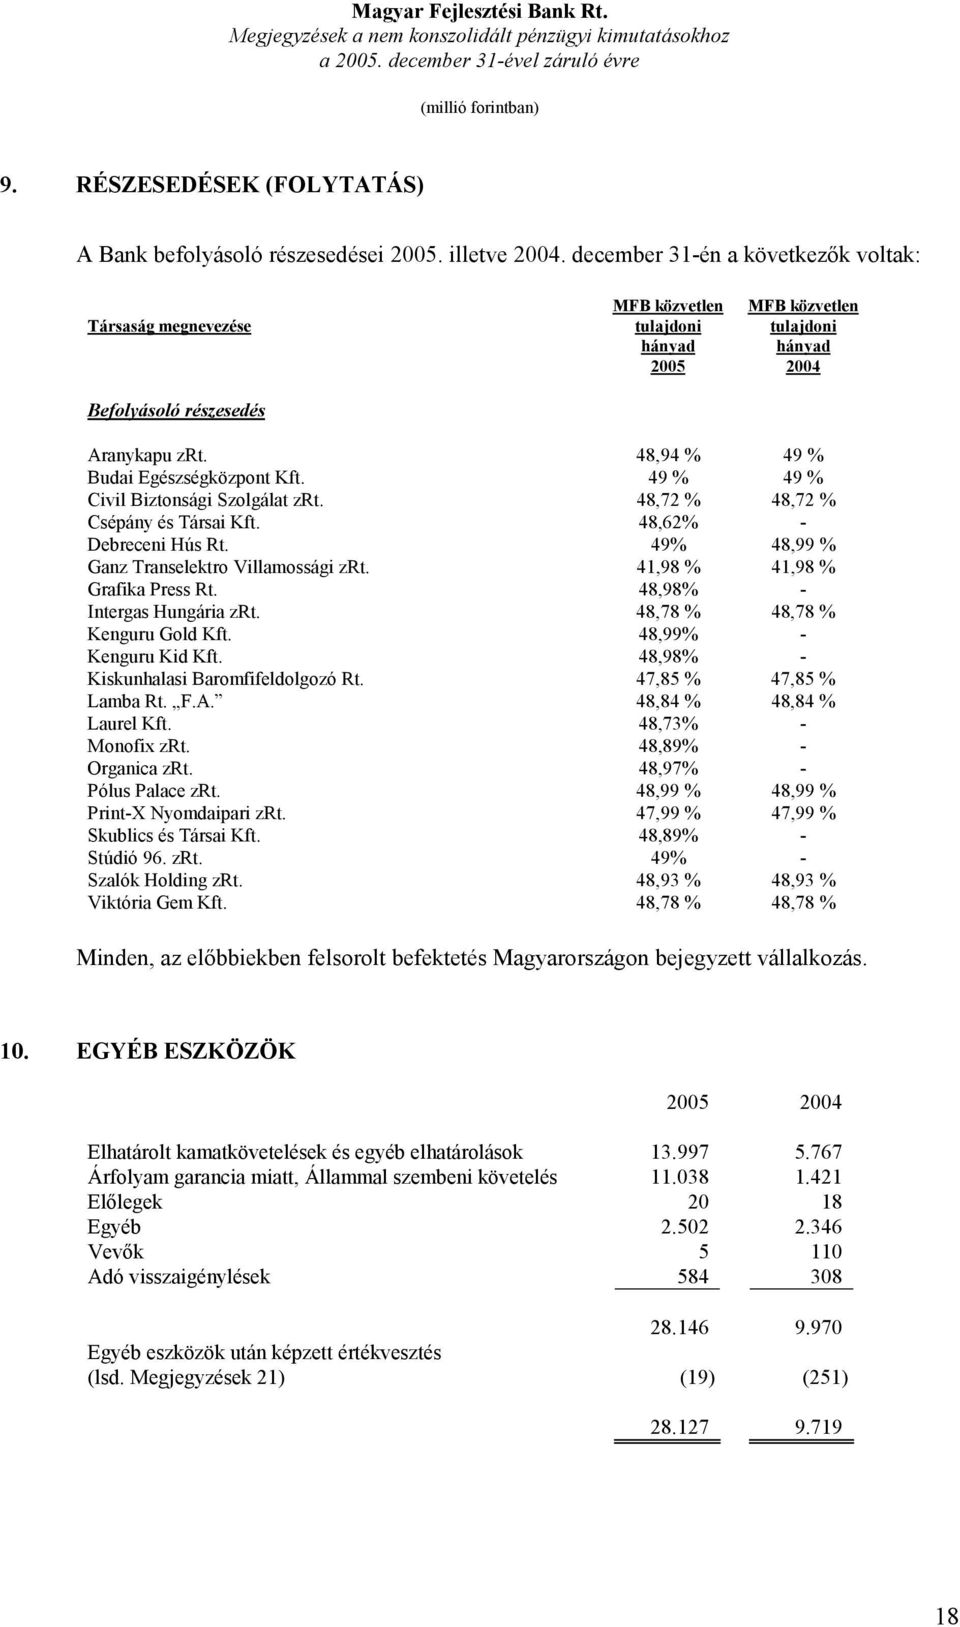 48,94 % 49 % Budai Egészségközpont Kft. 49 % 49 % Civil Biztonsági Szolgálat zrt. 48,72 % 48,72 % Csépány és Társai Kft. 48,62% - Debreceni Hús Rt. 49% 48,99 % Ganz Transelektro Villamossági zrt.